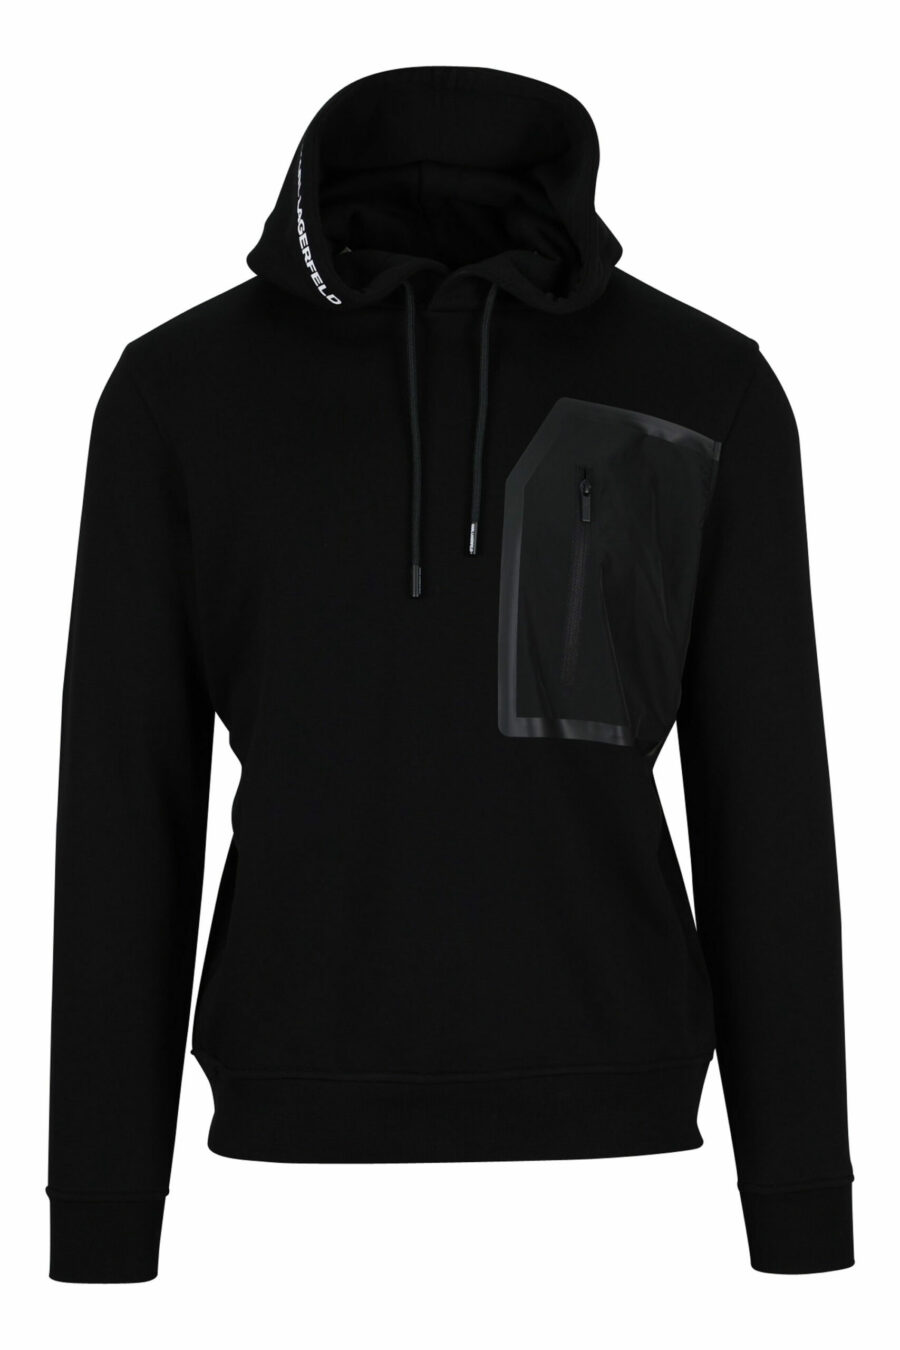 Schwarzes Sweatshirt mit Kapuze und Nylontasche - 4062226389976 skaliert